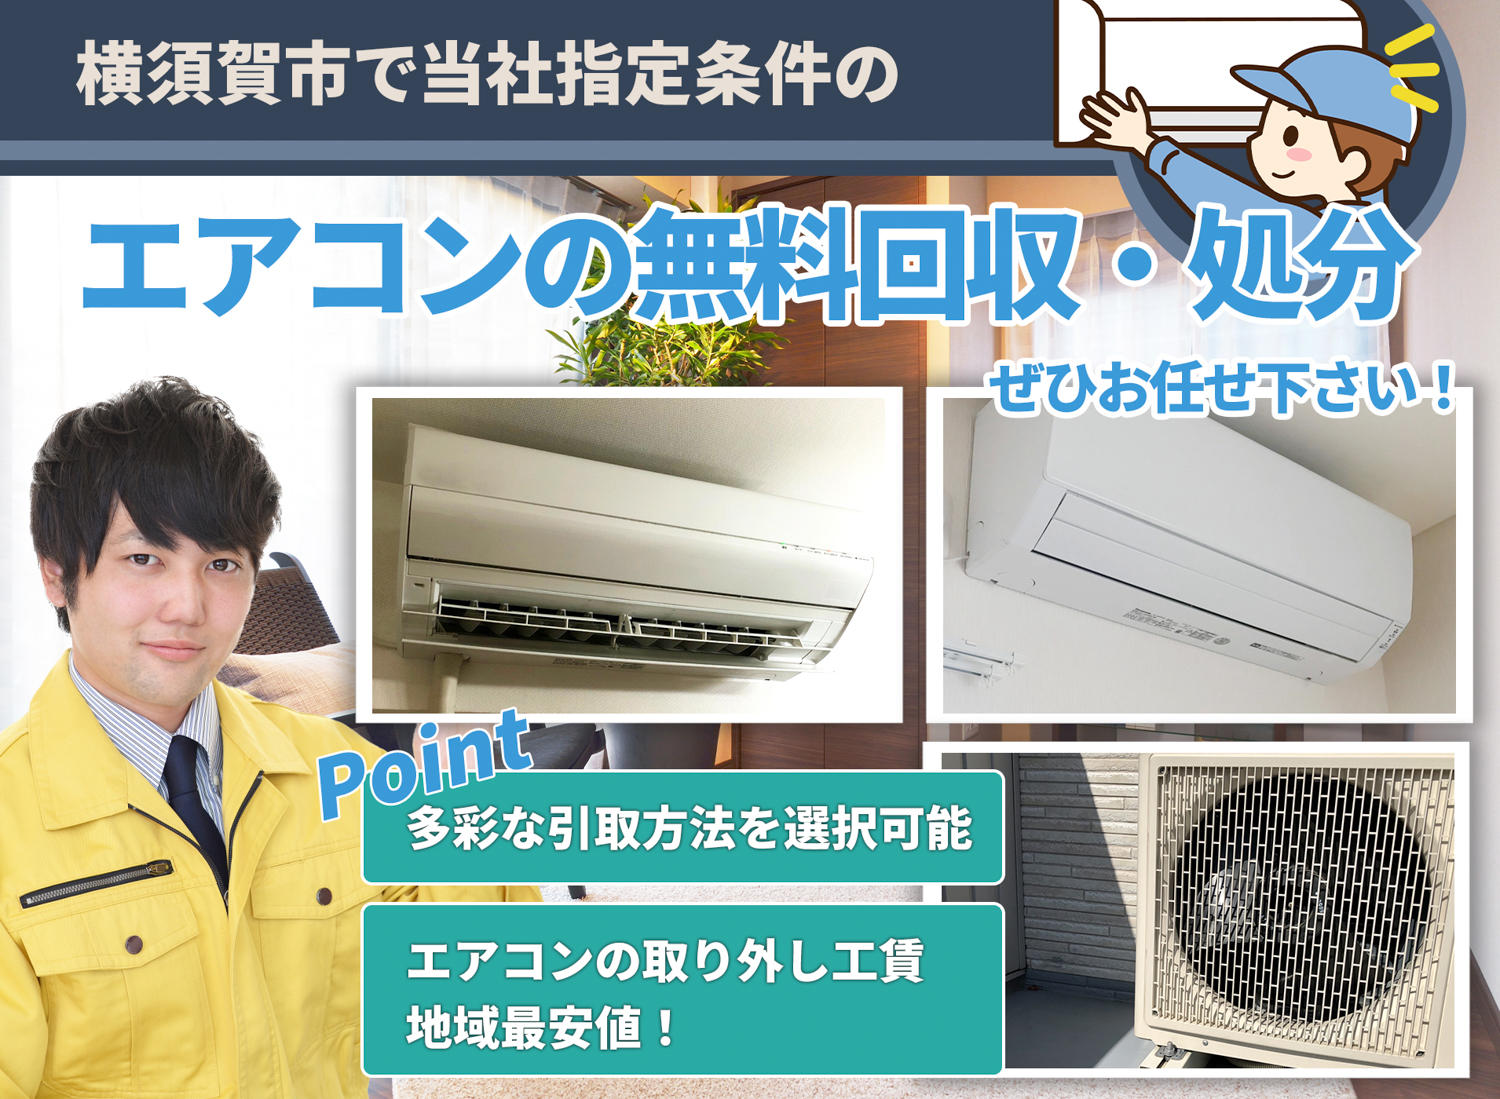 横須賀市で「丁寧な作業」で安心をエアコン無料回収処分隊のエアコン無料回収サービス